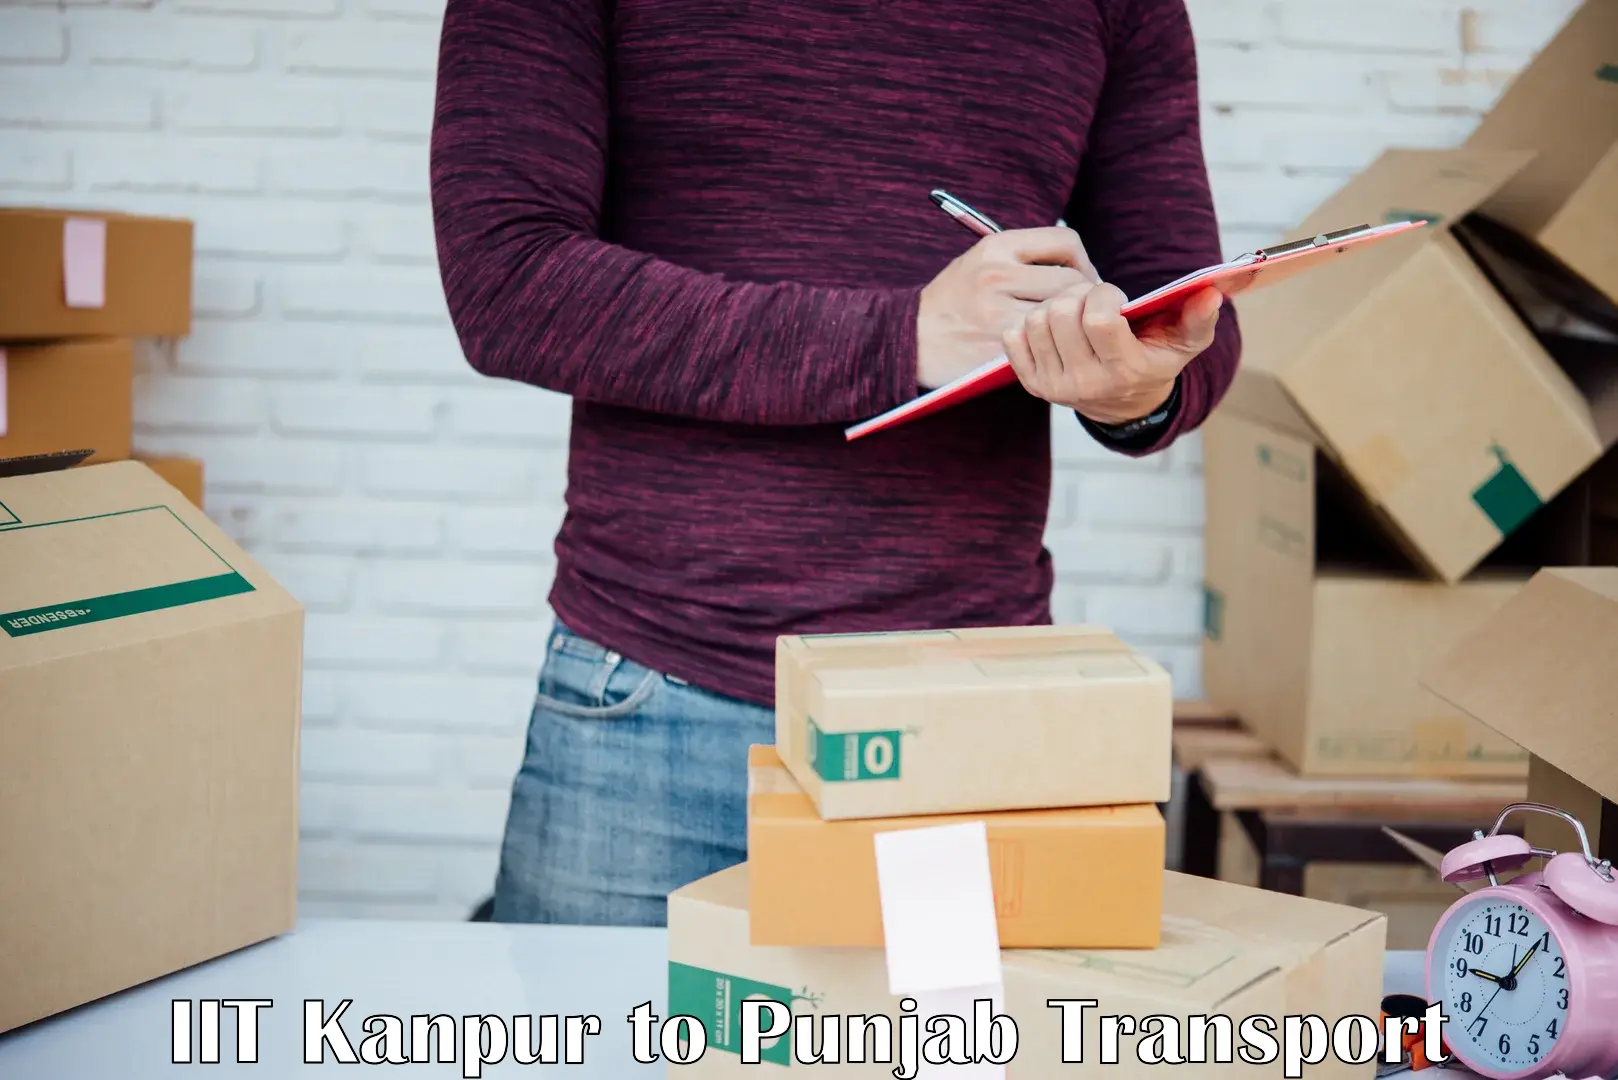 Luggage transport services IIT Kanpur to Talwara